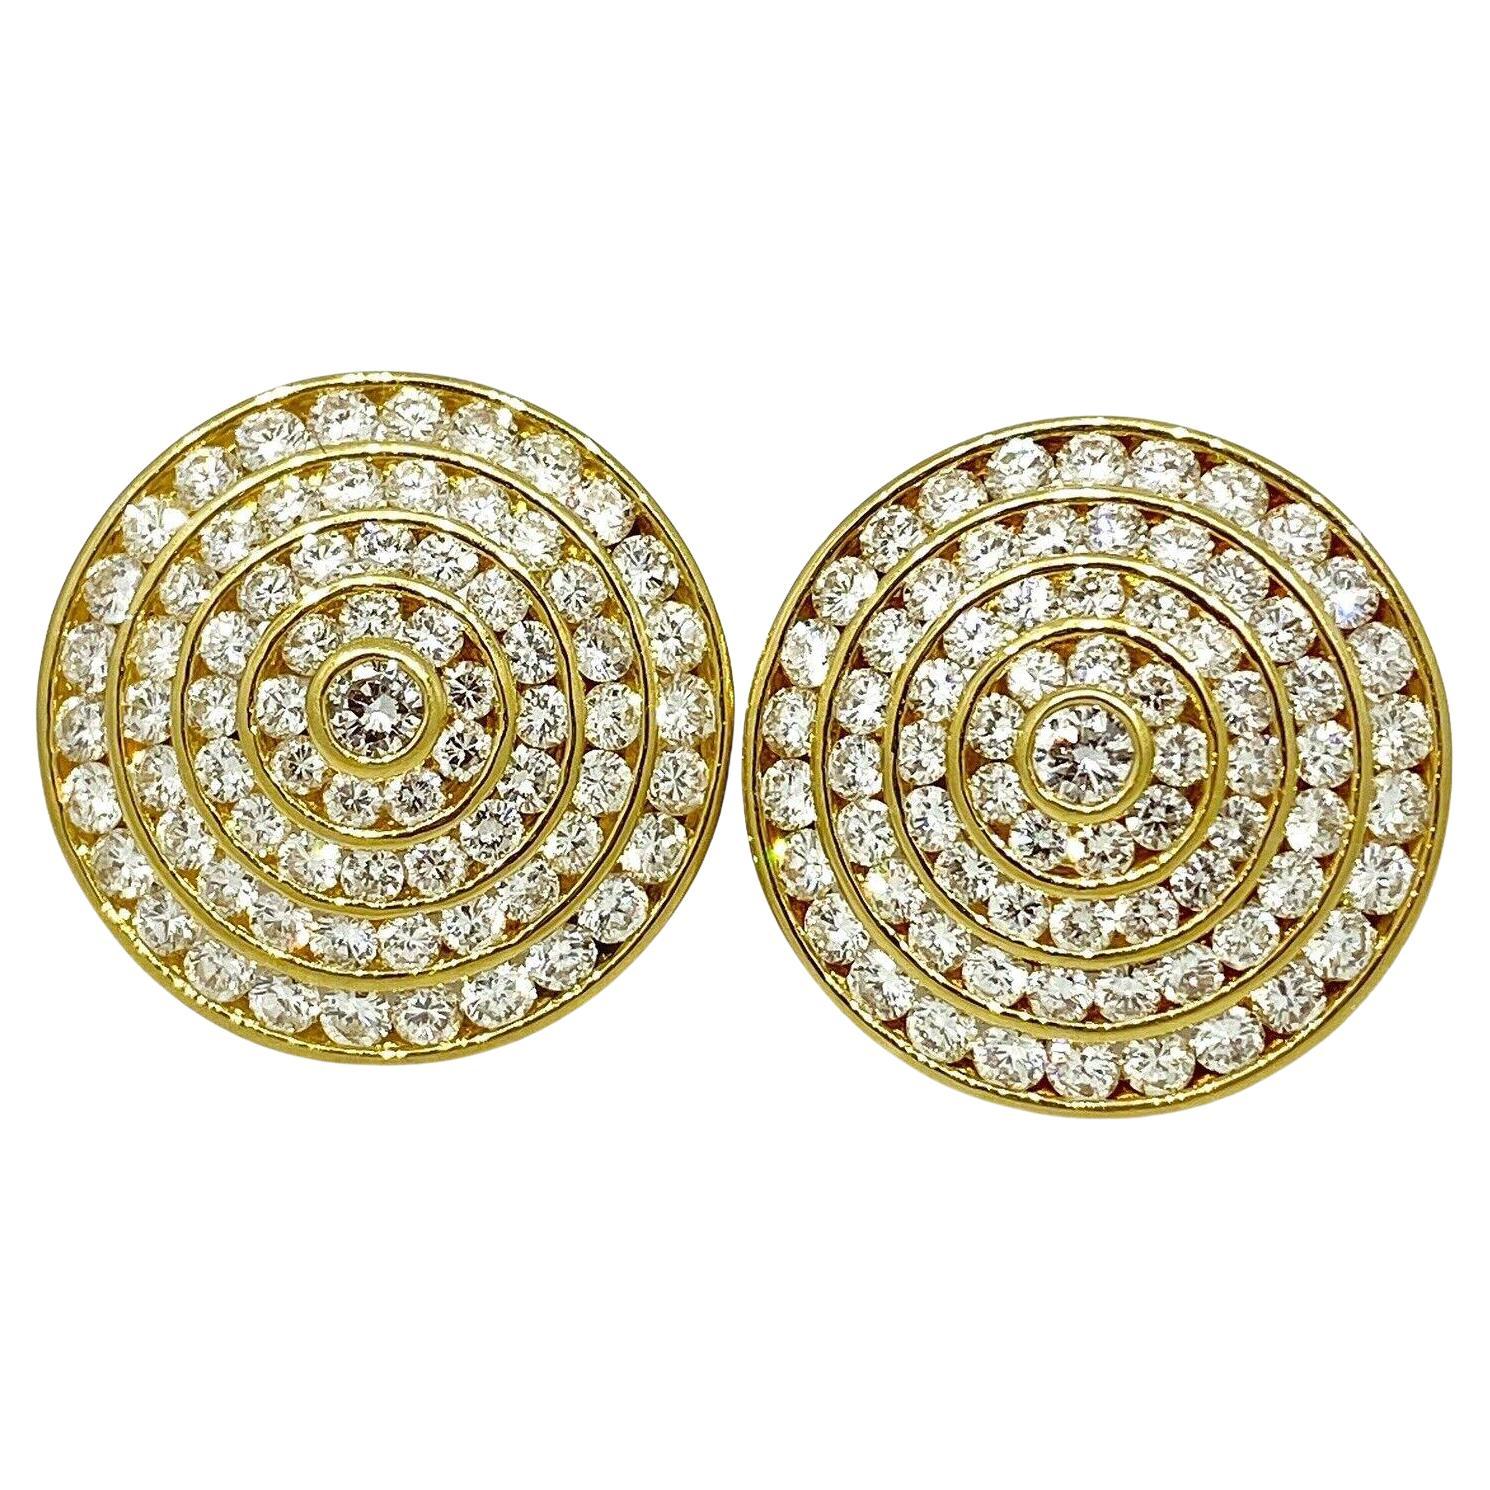 4 Reihen Kreis-Diamant-Ohrringe mit 3,95 Karat Gesamtgewicht aus 18 Karat Gelbgold